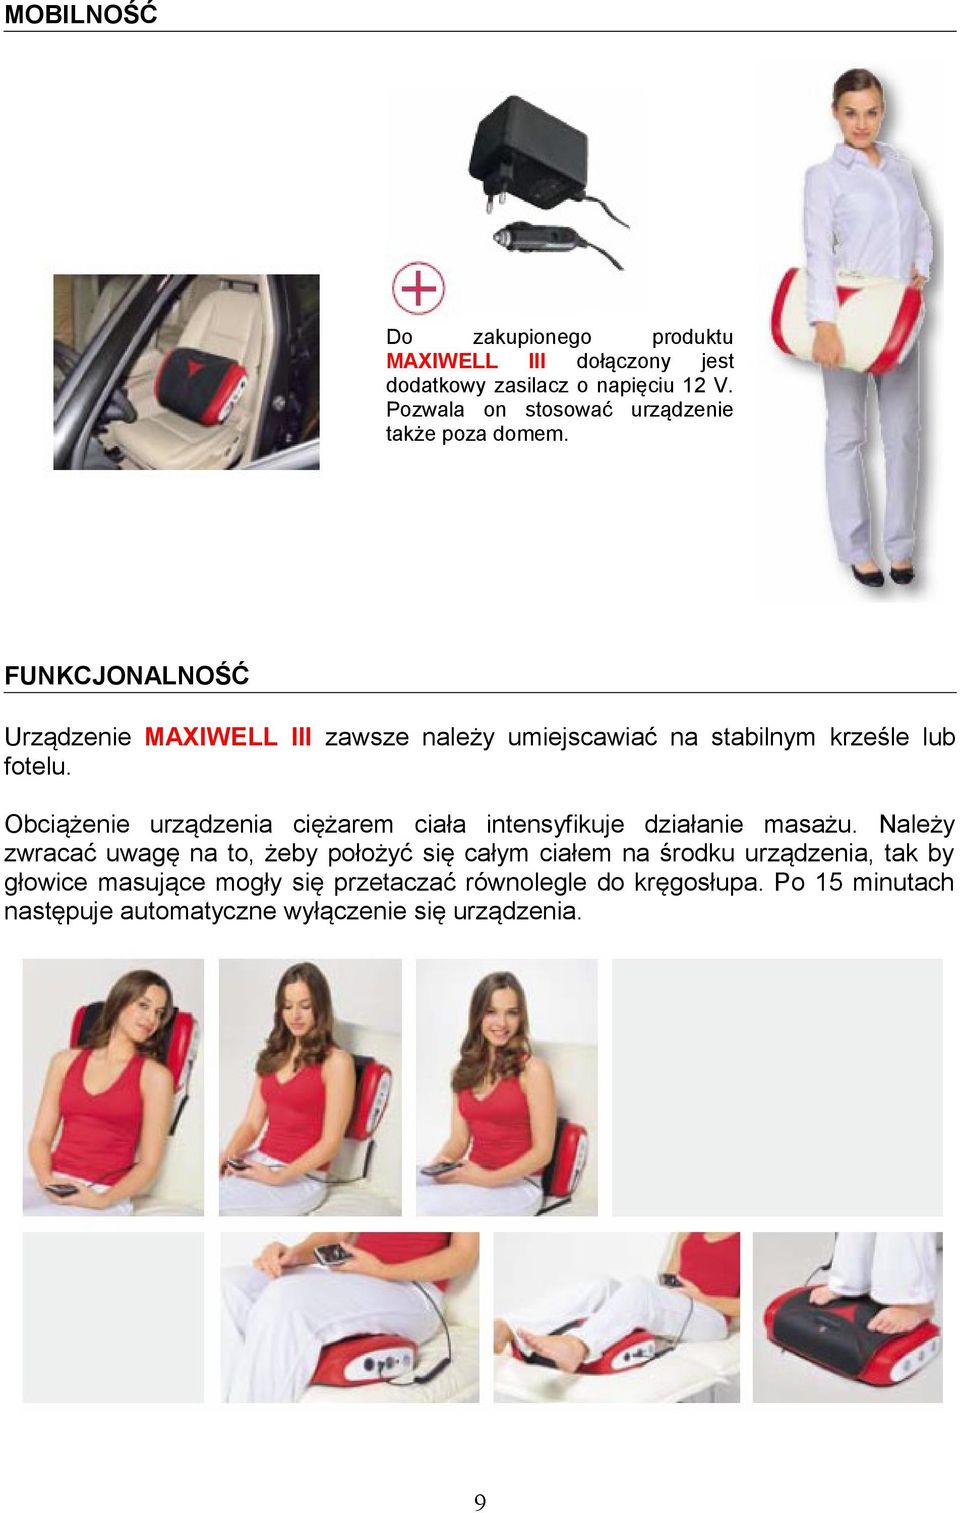 FUNKCJONALNOŚĆ Urządzenie MAXIWELL III zawsze należy umiejscawiać na stabilnym krześle lub fotelu.